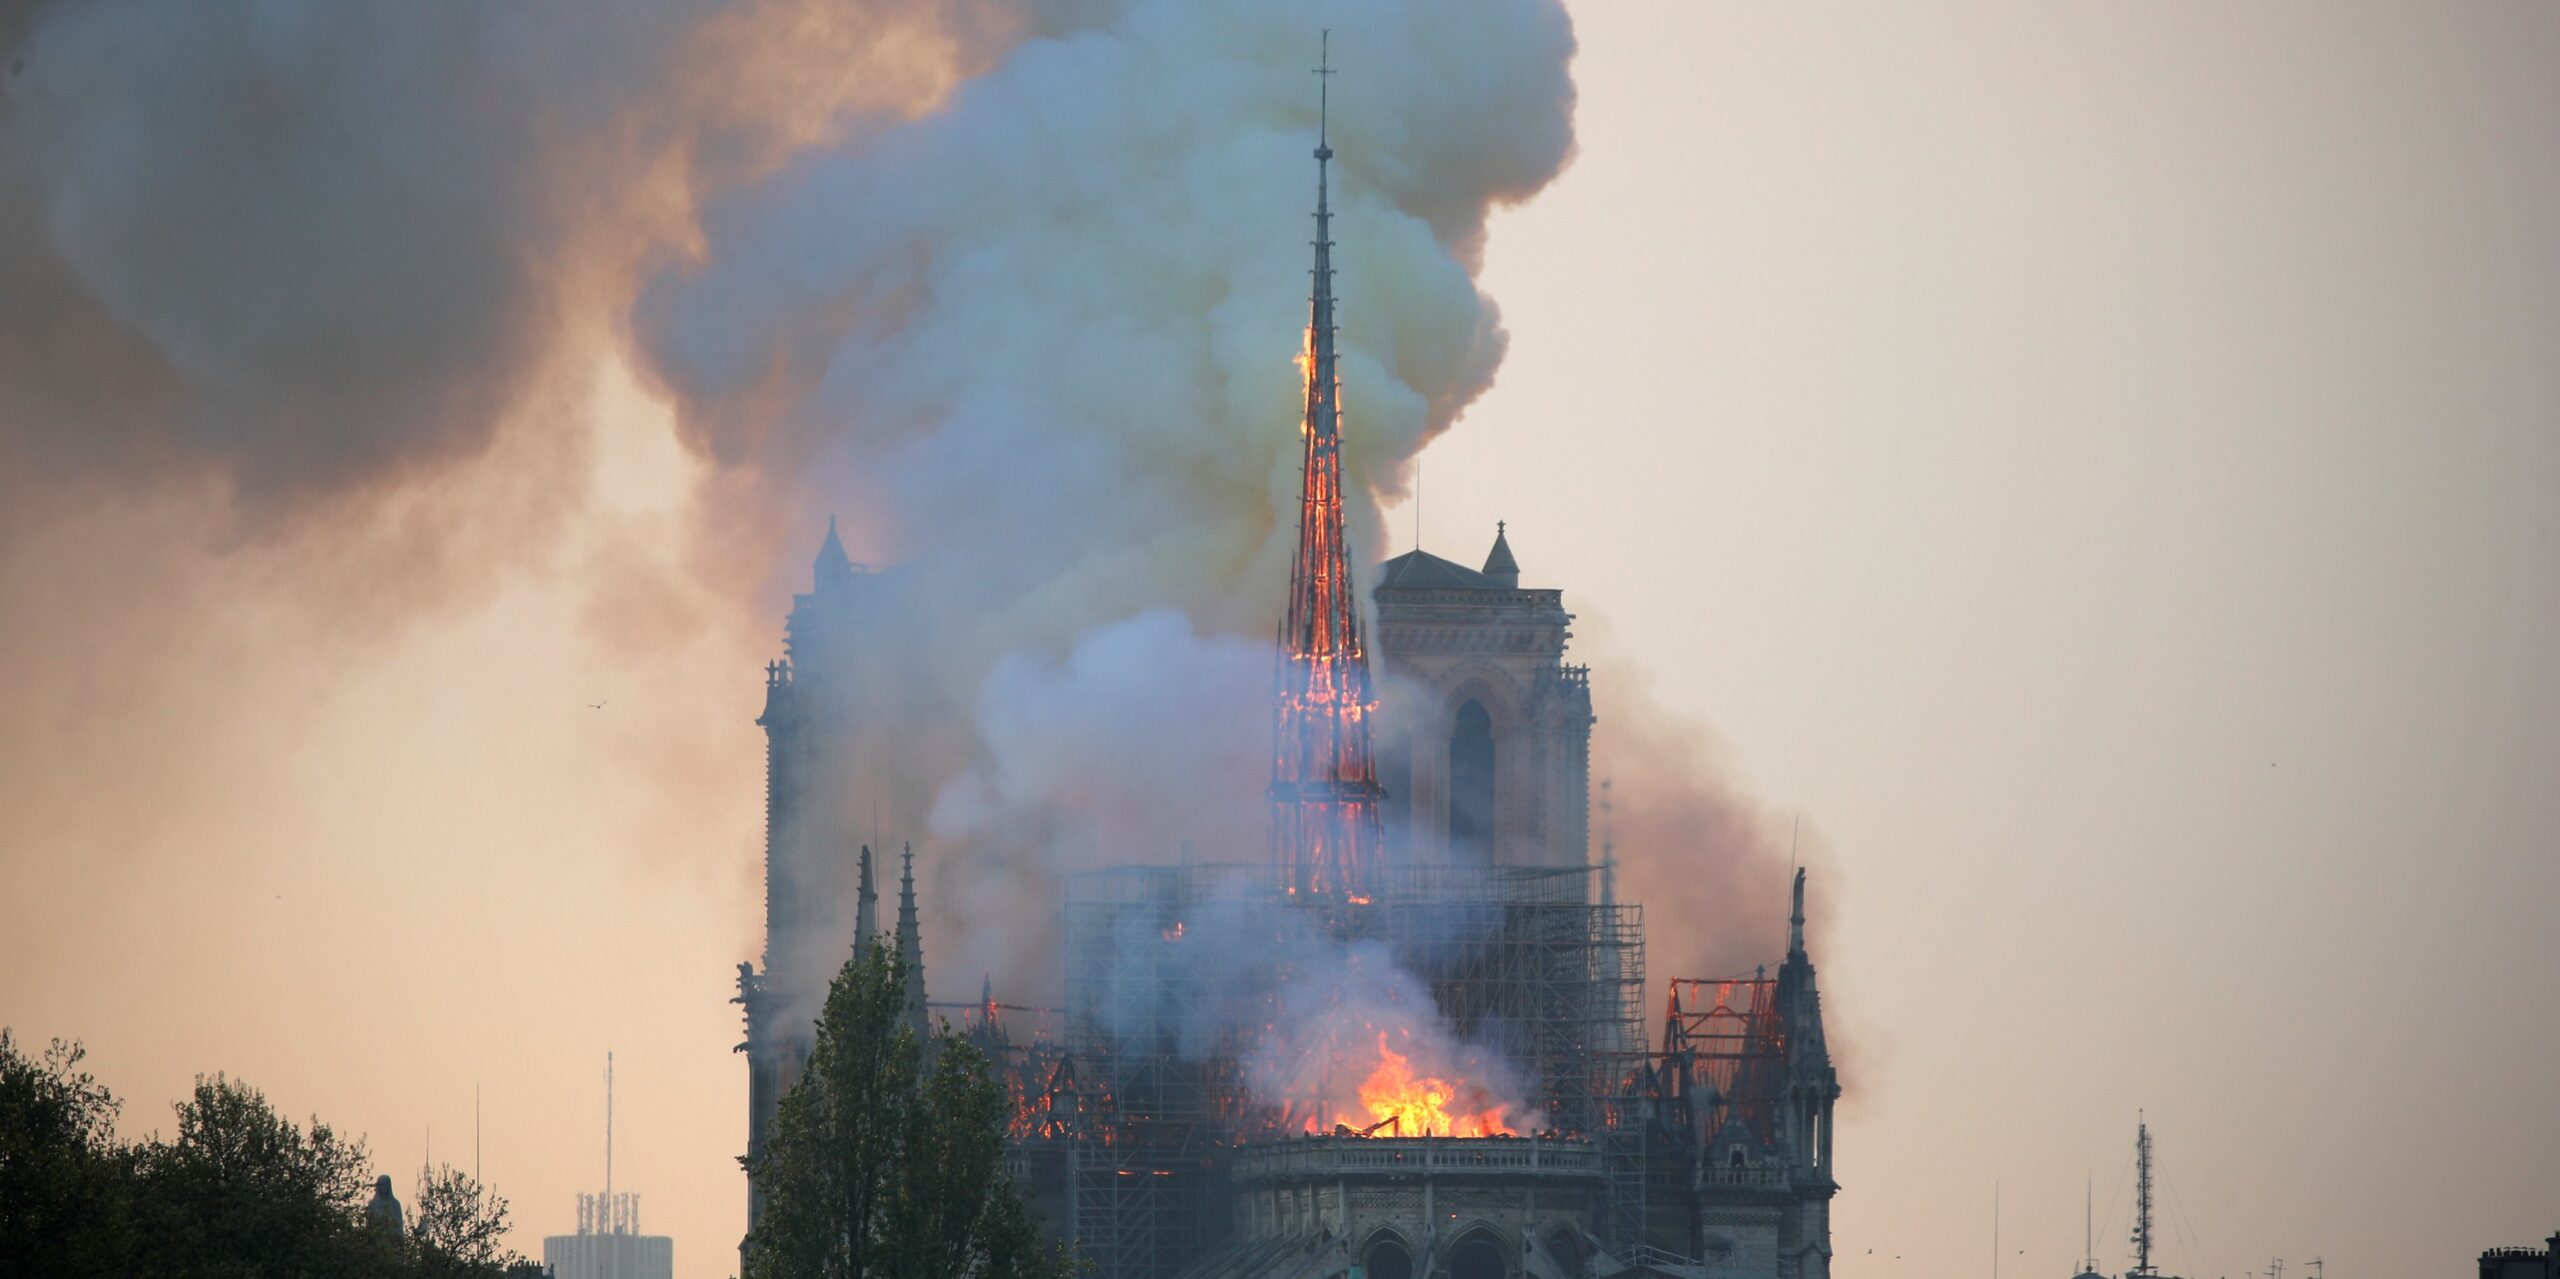 El Vaticano expresa “conmoción y dolor” por el incendio de Notre Dame [UPDATED]